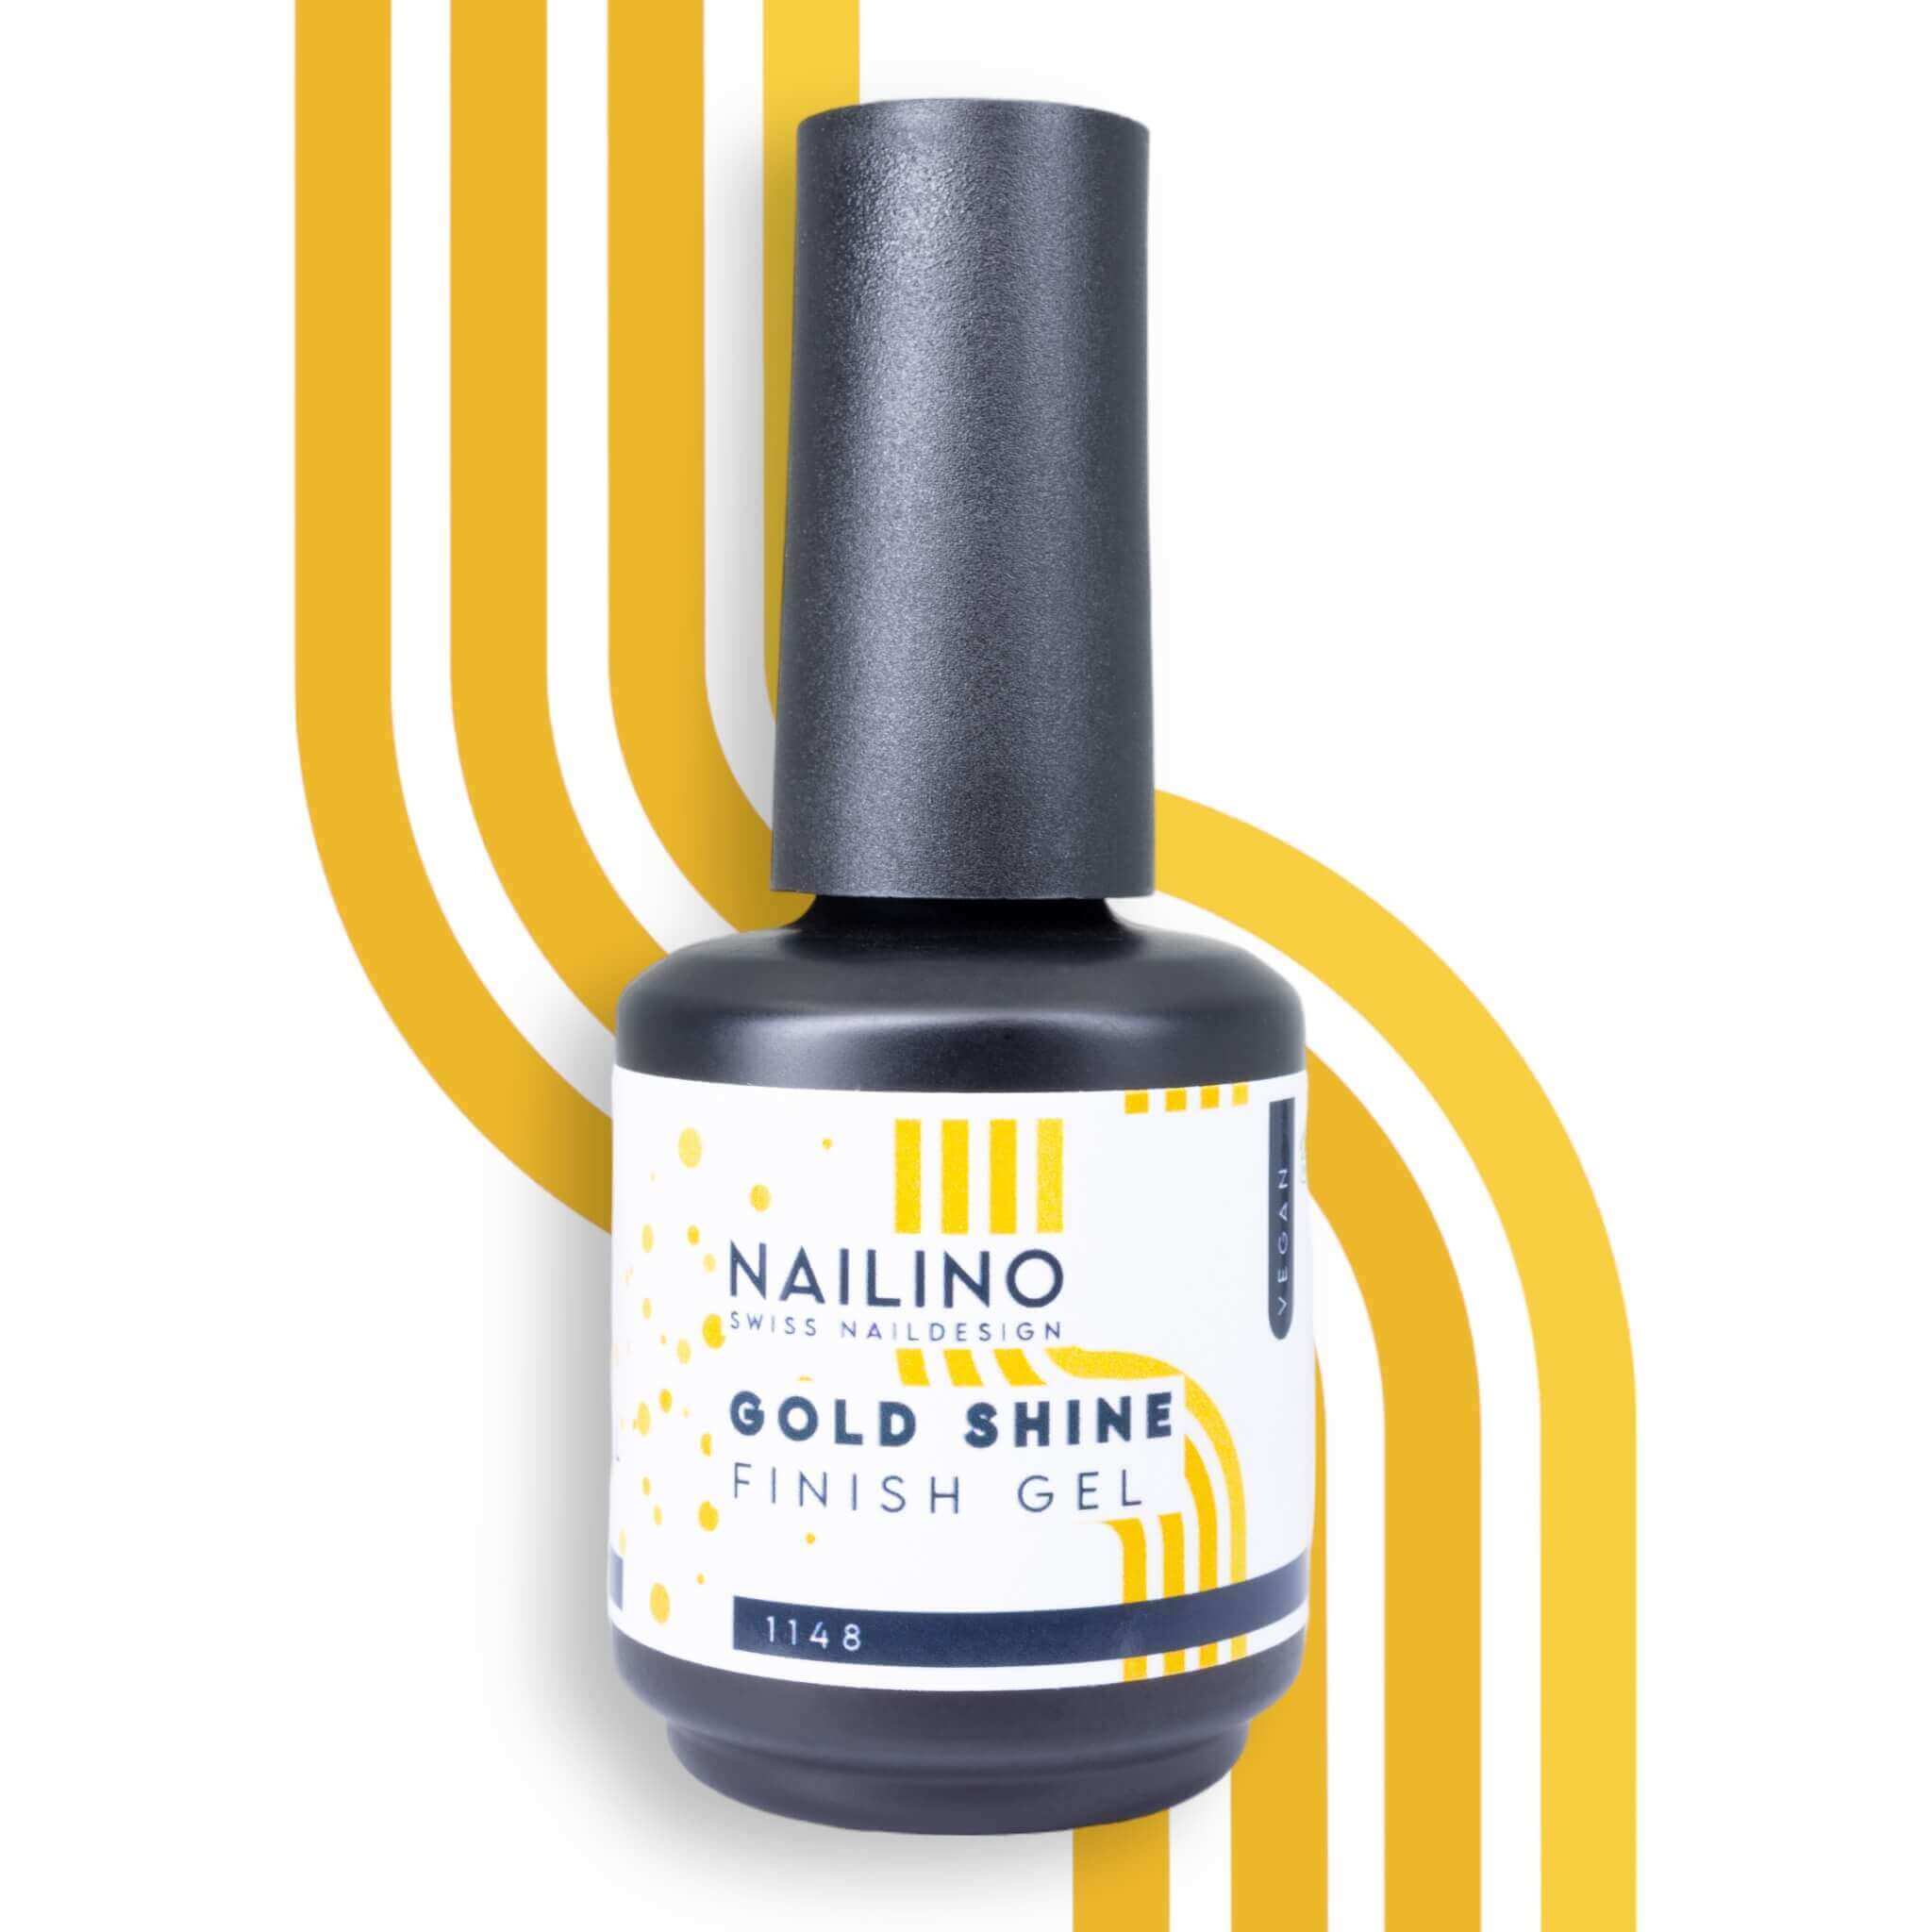 NAILINO Finish Gel Gold Shine Versiegelungsgel